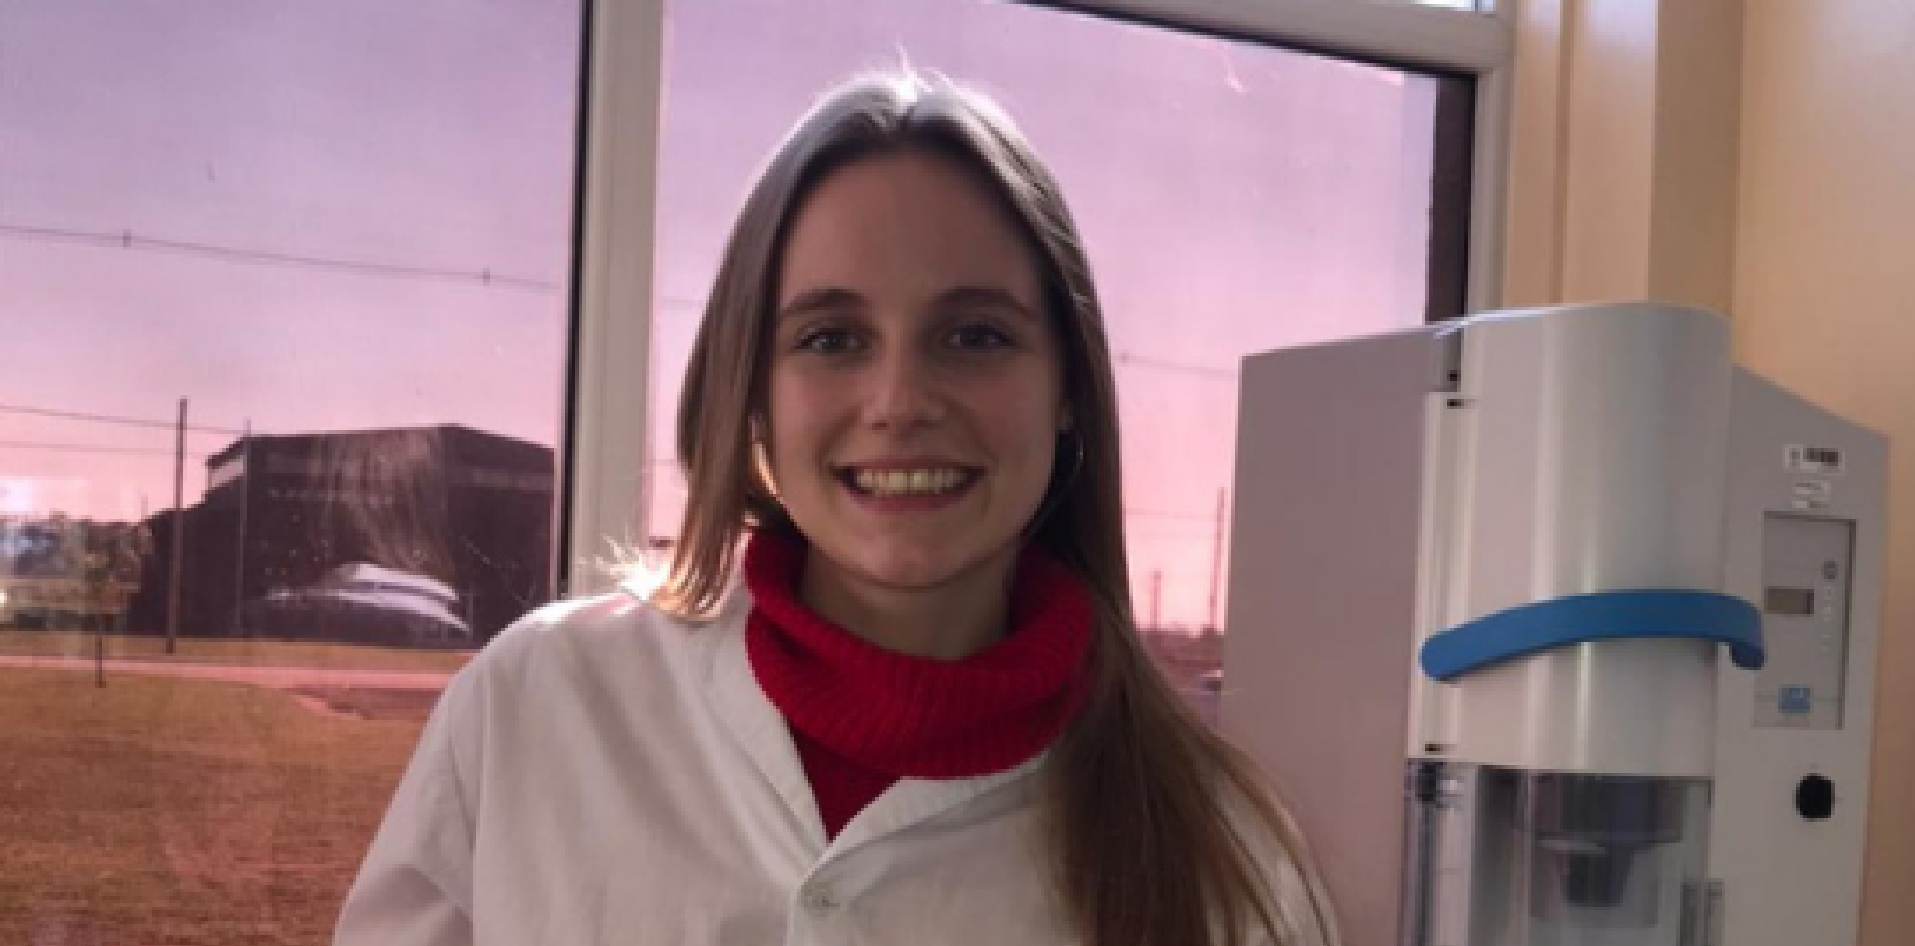 Adriana Kociubczyk es estudiante de Bioquímica y flamante becaria en el Laboratorio de Alimentos del